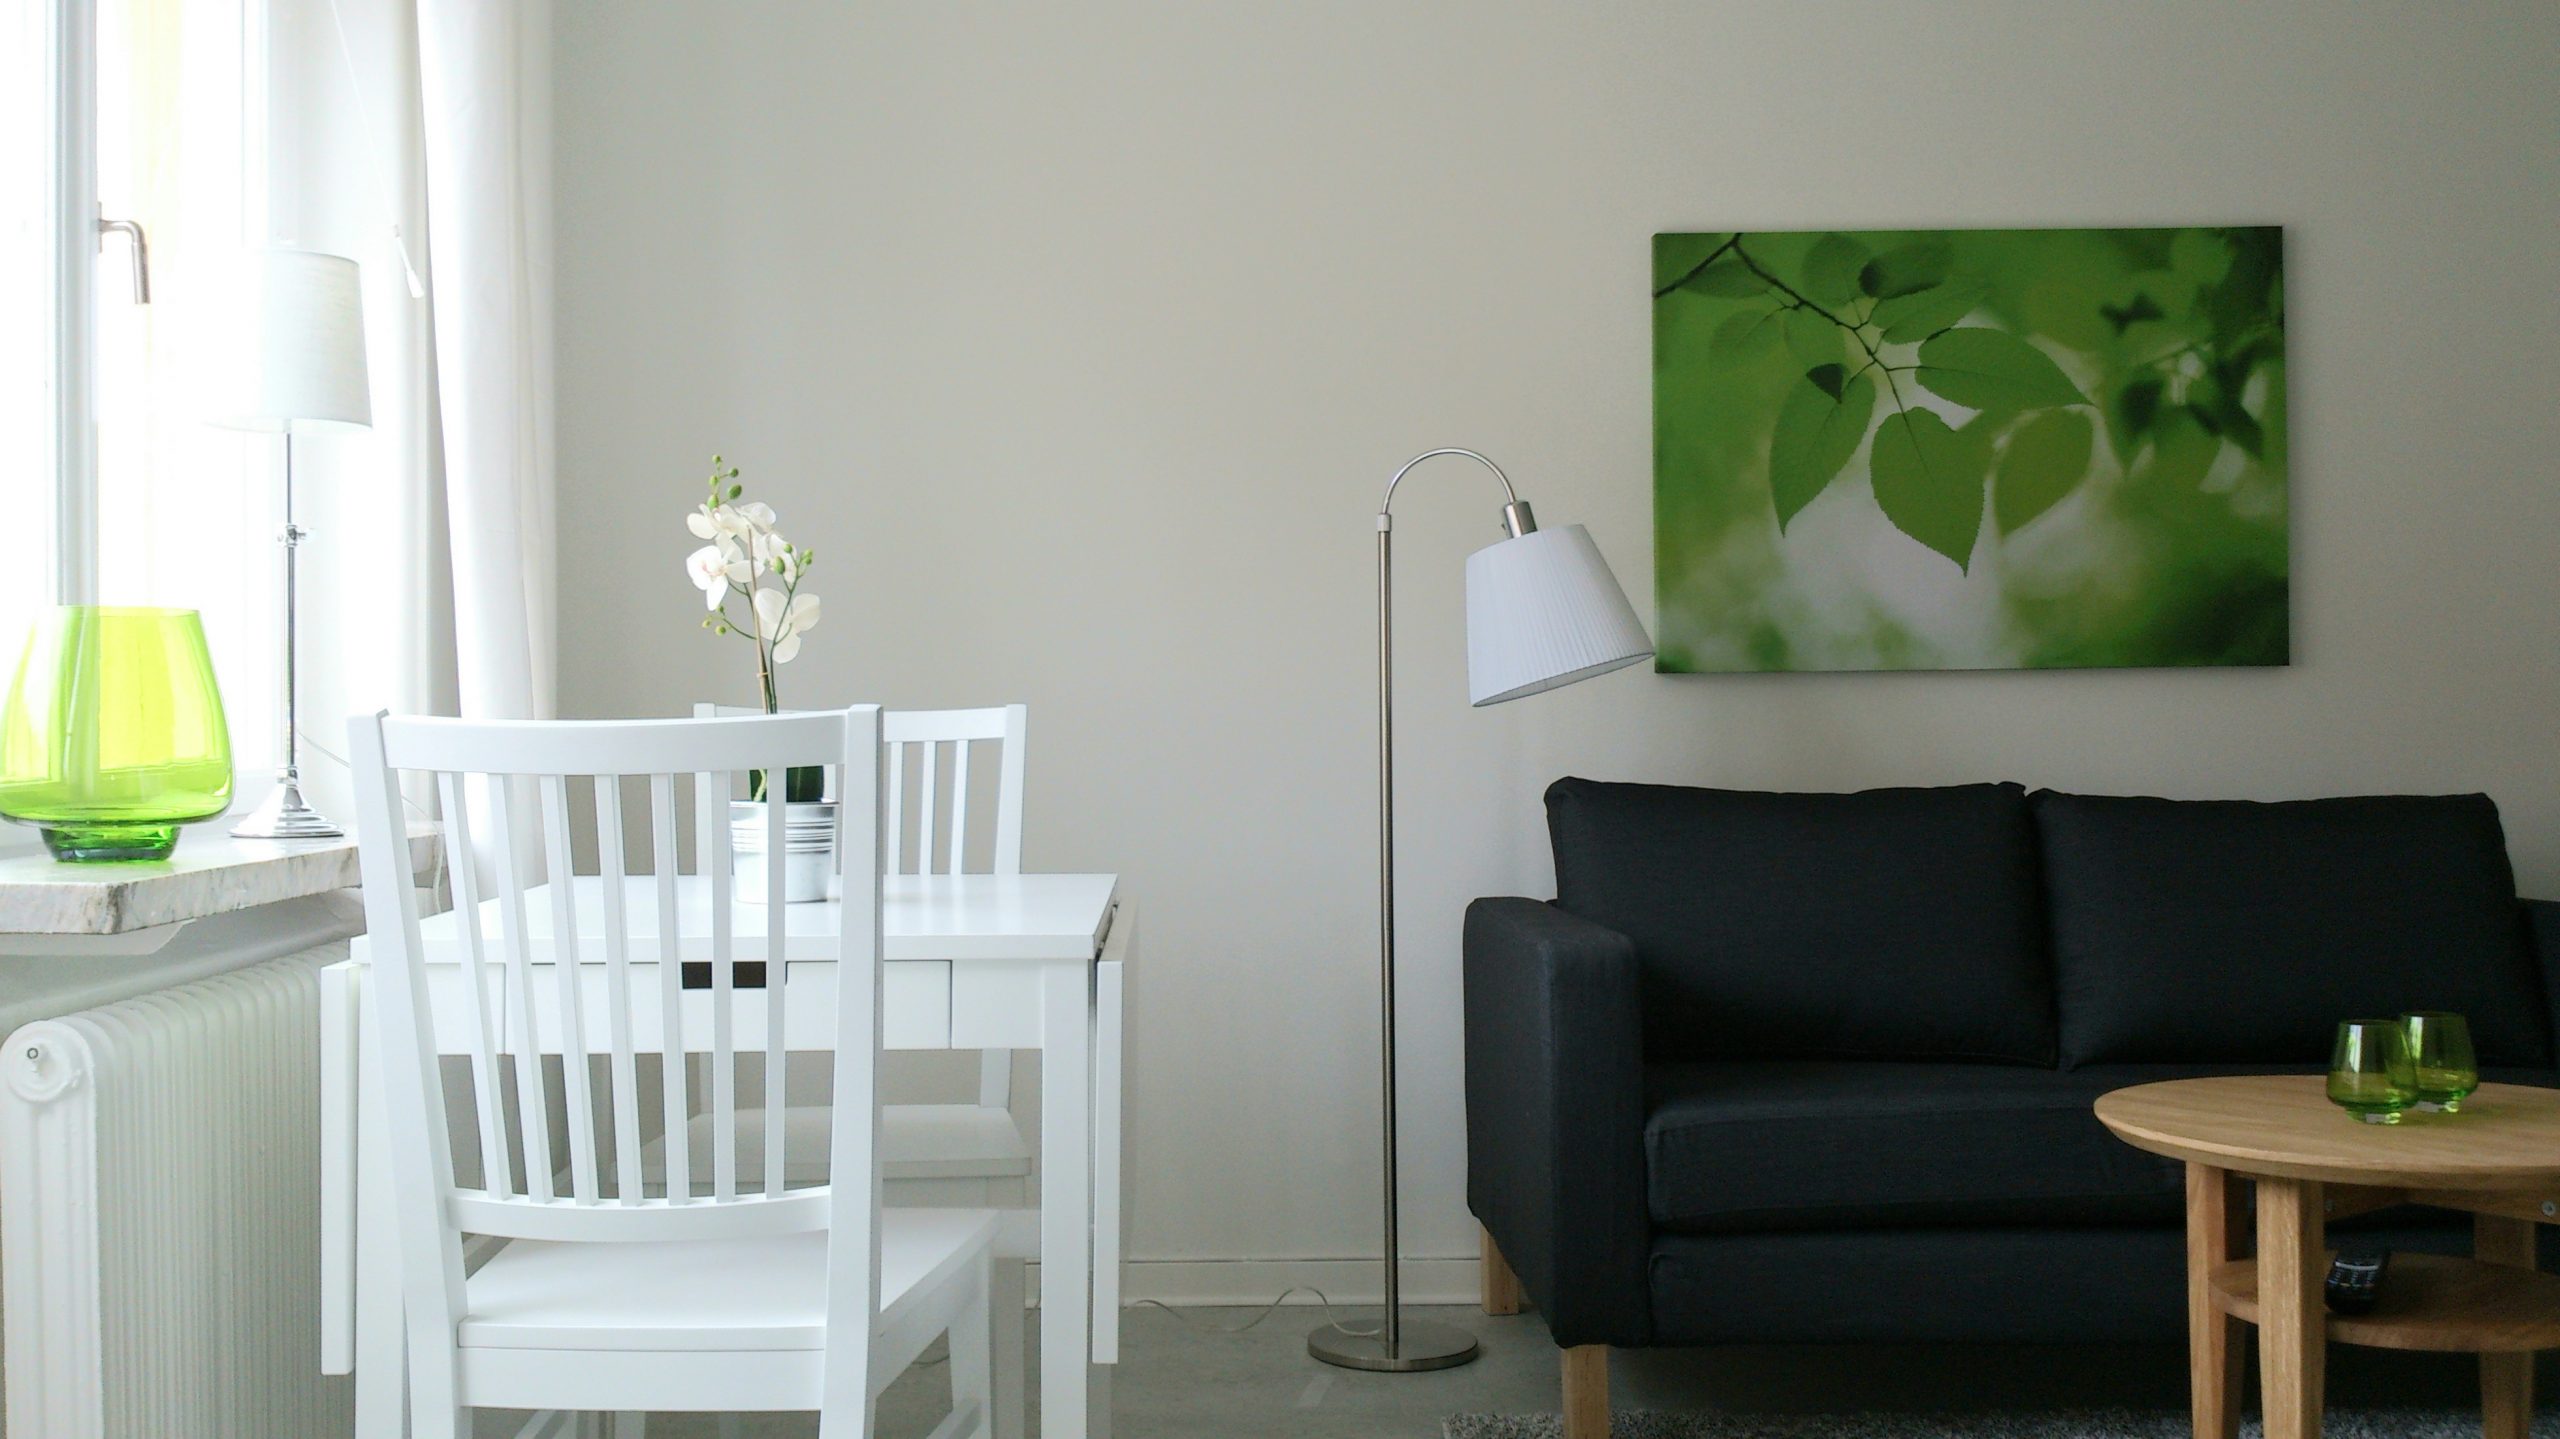 Möblerad lägenhet som Länsgården hyr ut. På bilden ser man ett vitt bord med två stolar, en svart soffa, en tavla, en lampa och ett soffbord i trä